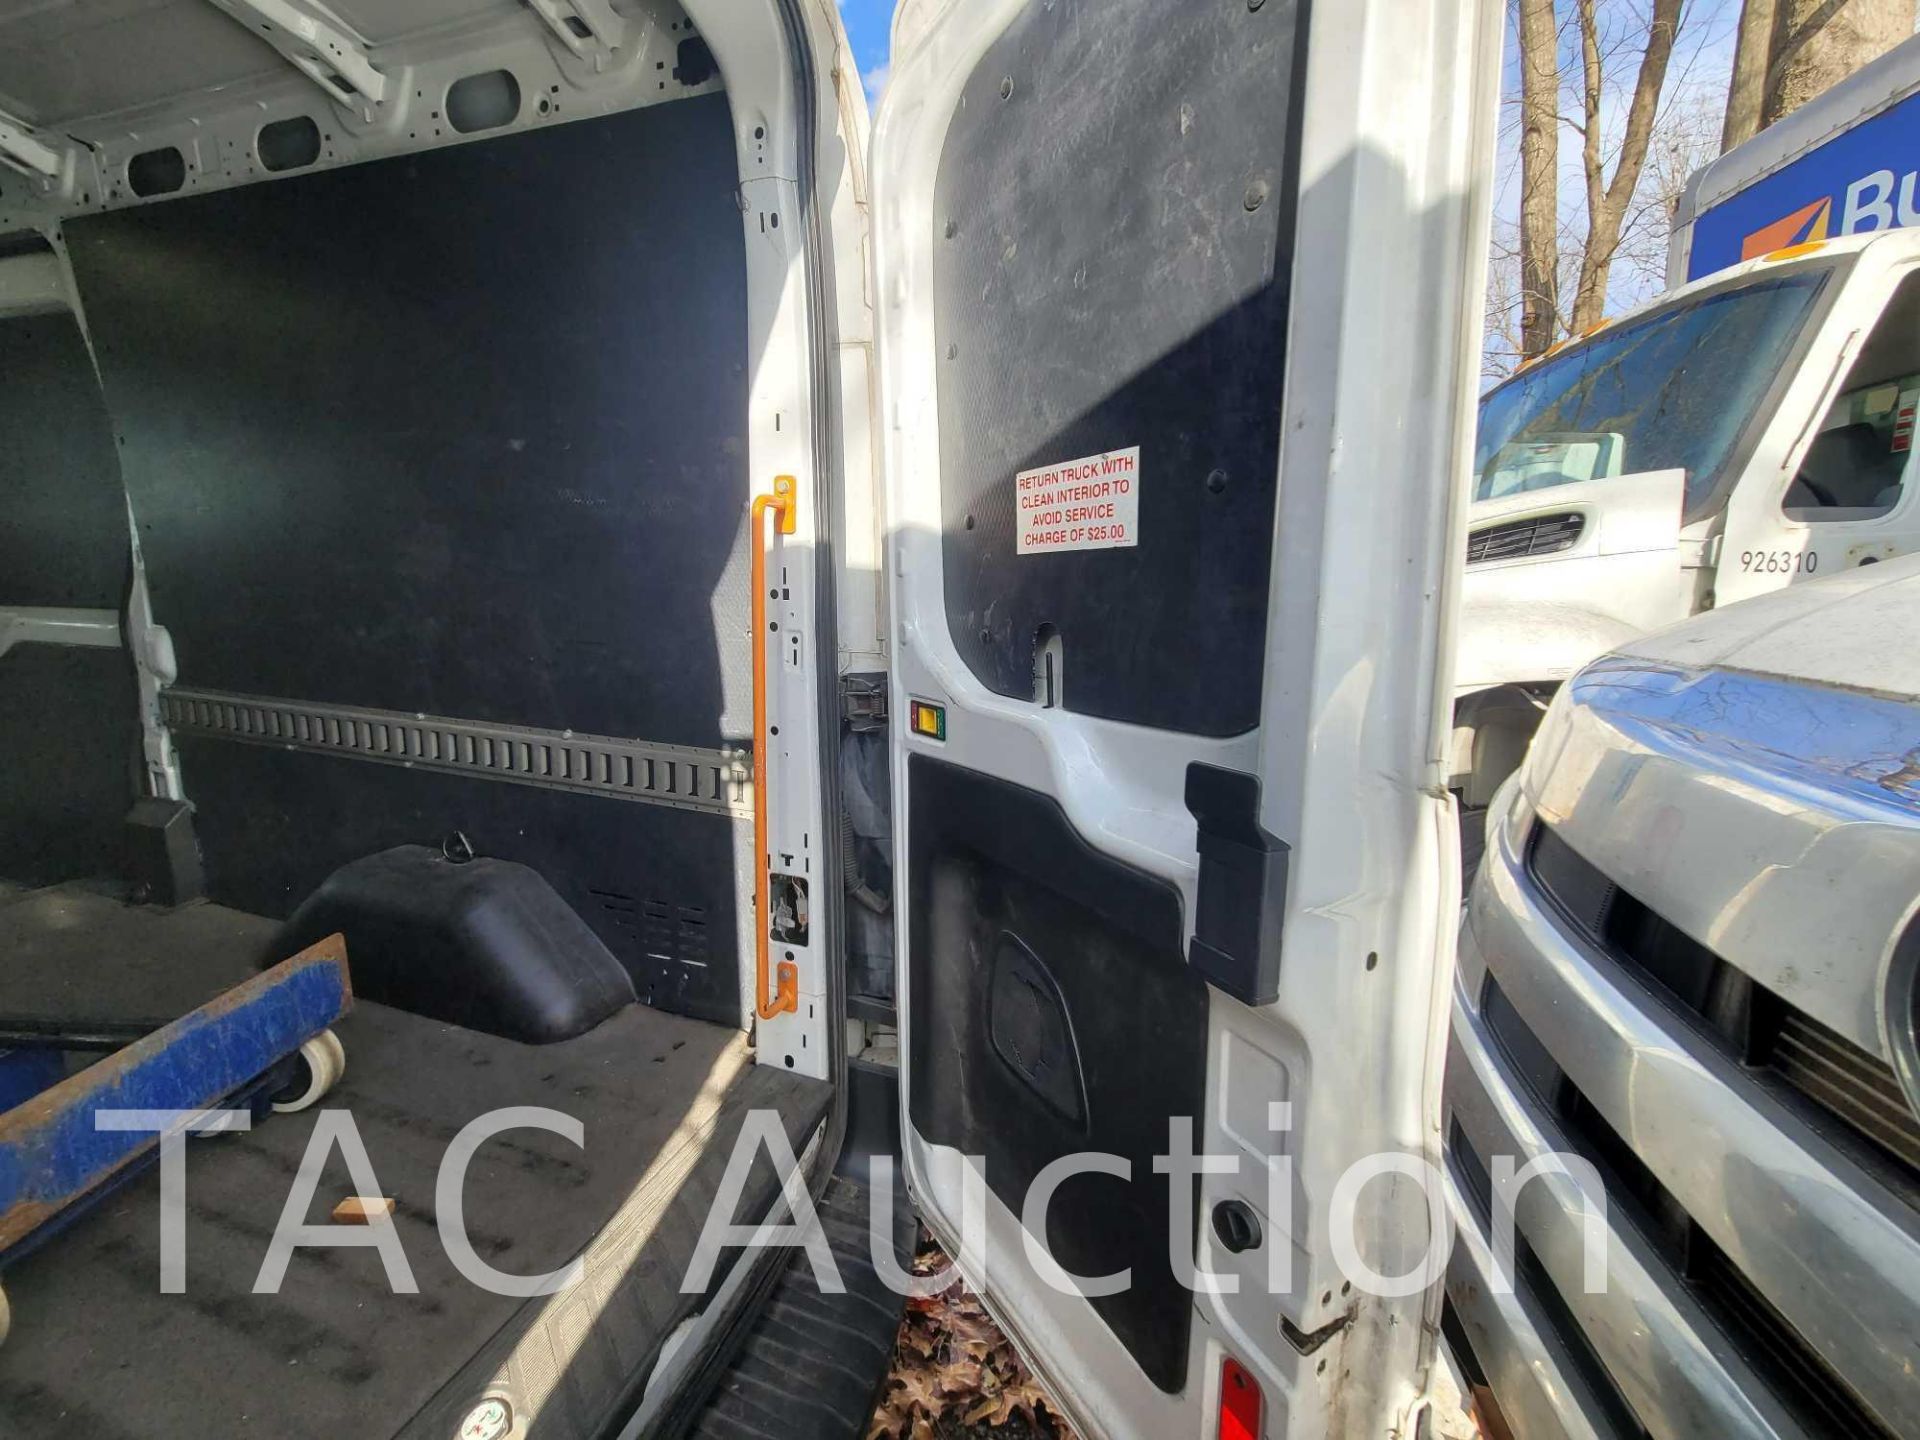 2018 Ford Transit 150 Cargo Van - Image 25 of 40